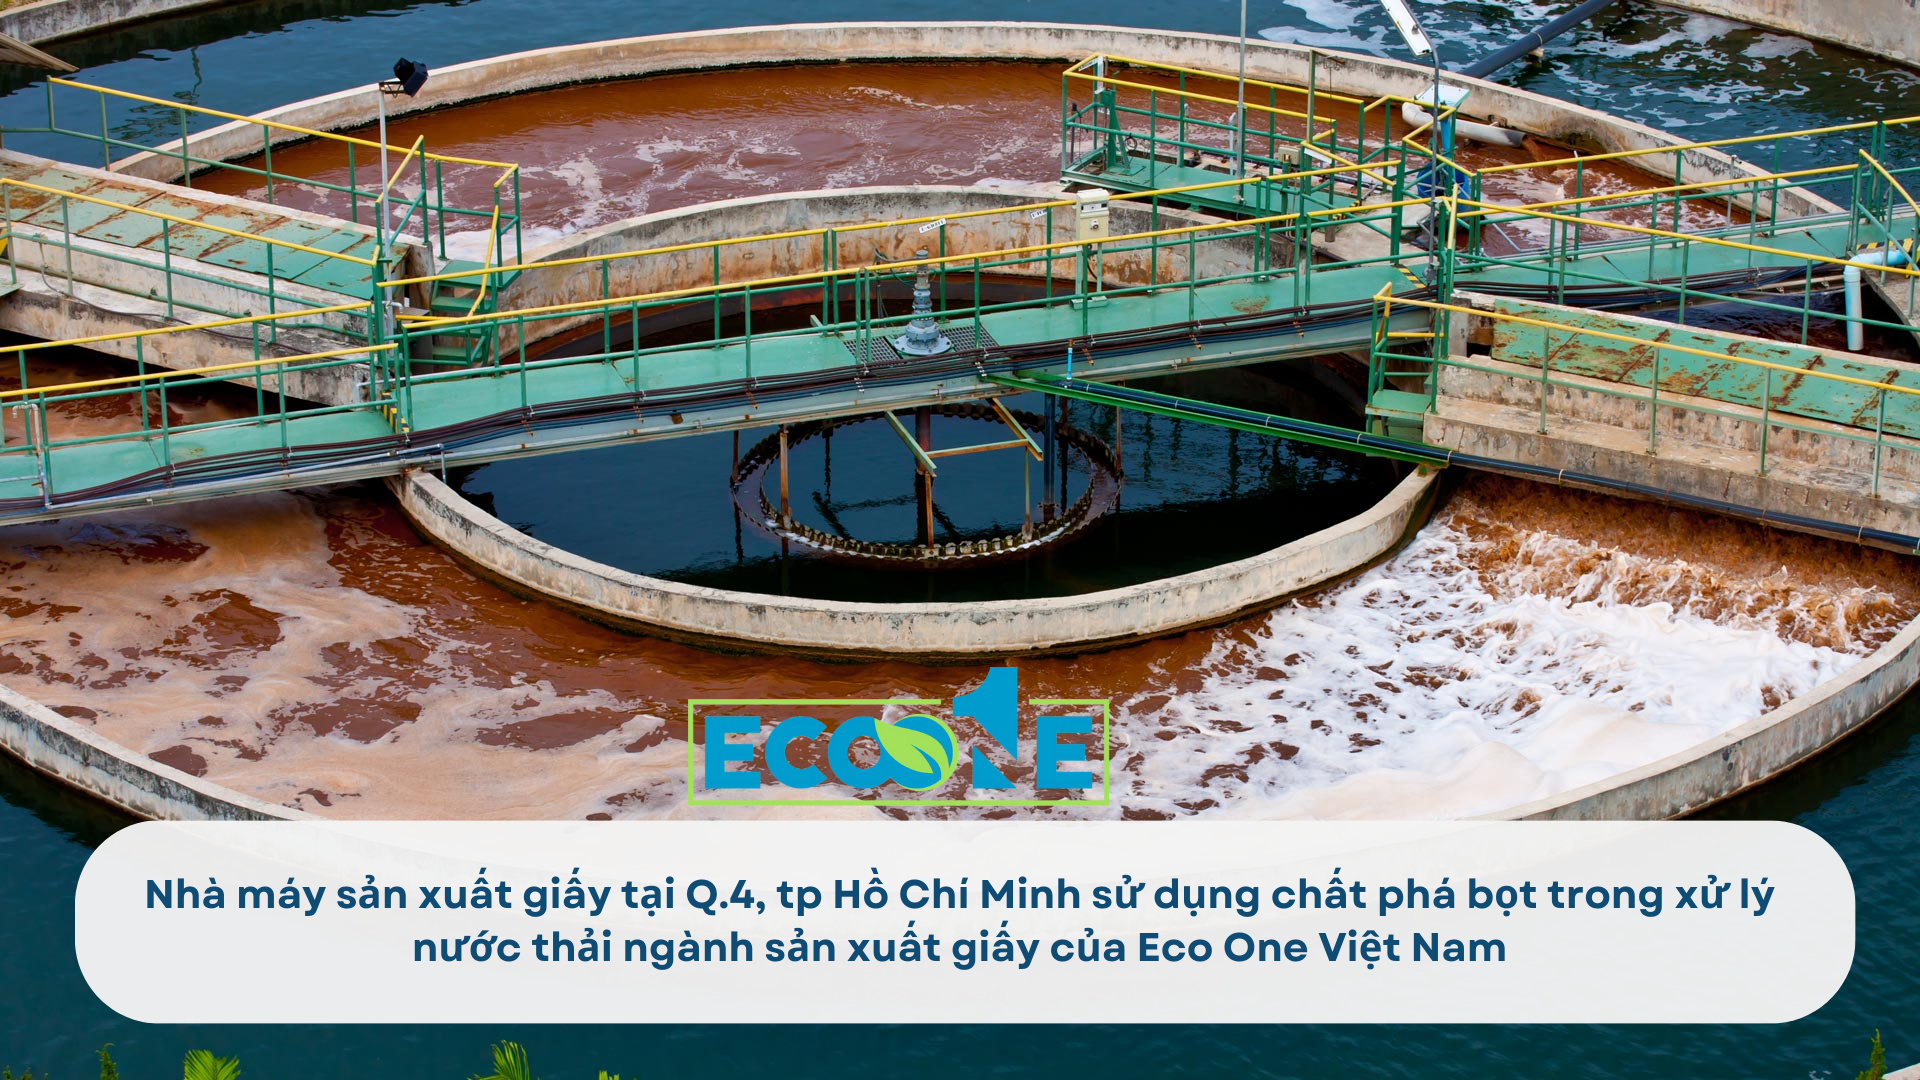 Nhà máy sản xuất giấy tại Q.4, tp Hồ Chí Minh sử dụng chất phá bọt trong xử lý nước thải ngành sản xuất giấy của Eco One Việt Nam